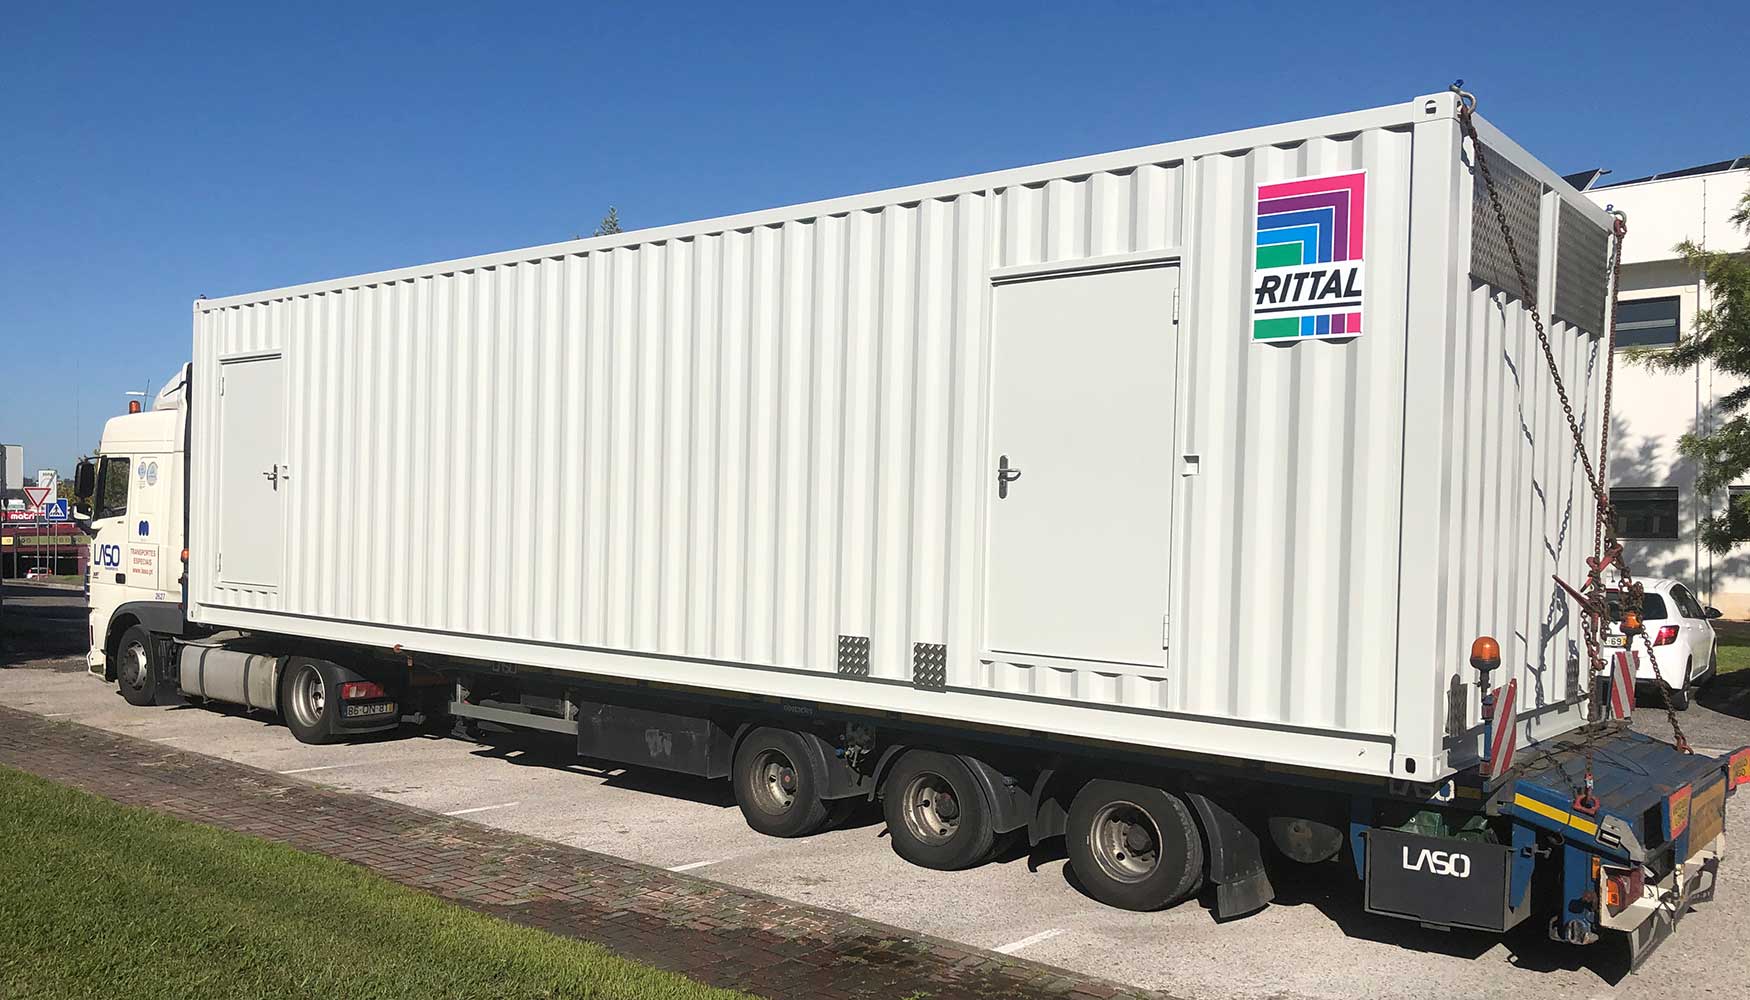 El Data Center Container fue fabricado ntegramente por Rittal en Alemania y fue transportado al campus del IPL en un transporte especial...